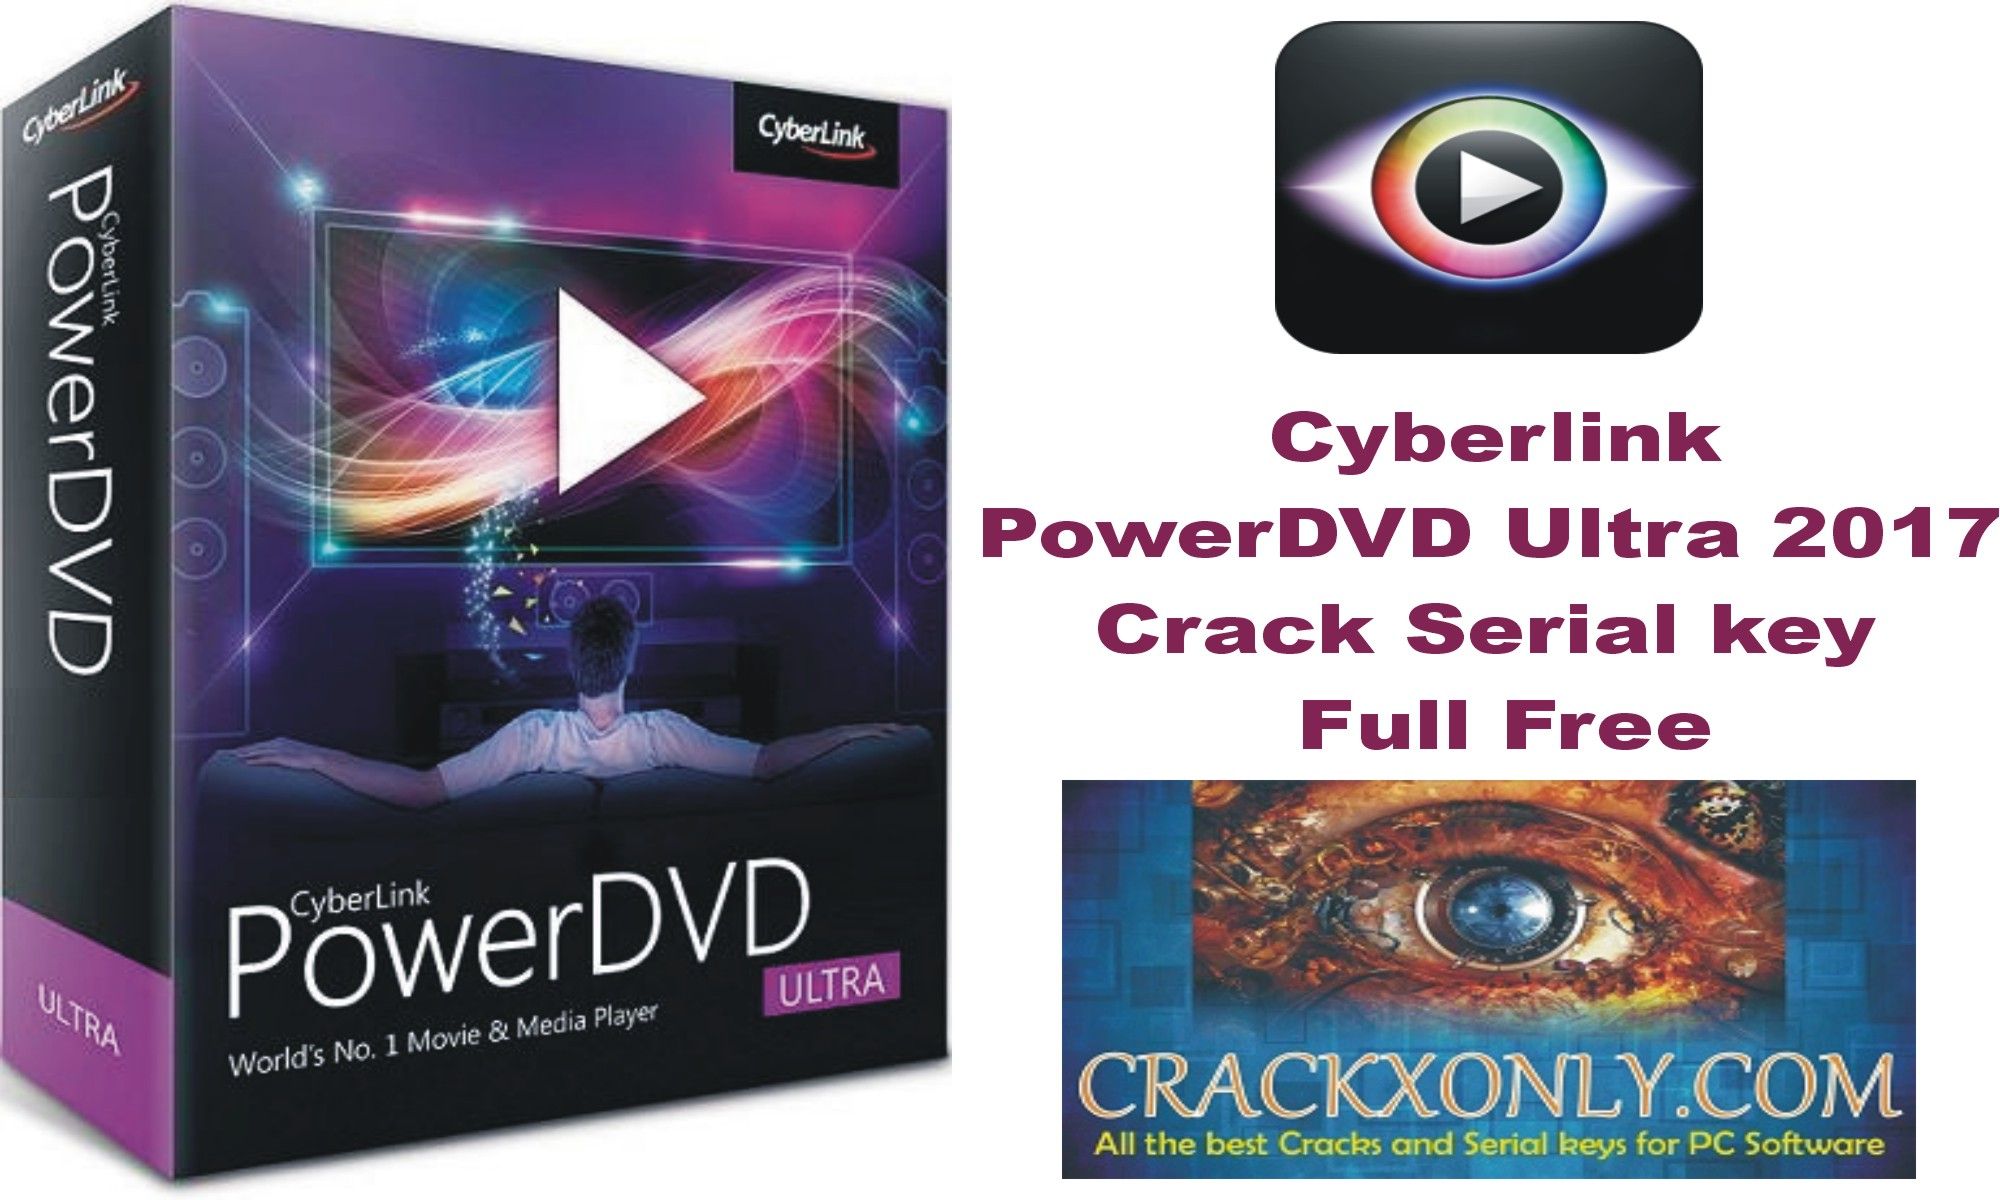 Cyberlink powerdvd 15 activation code free download